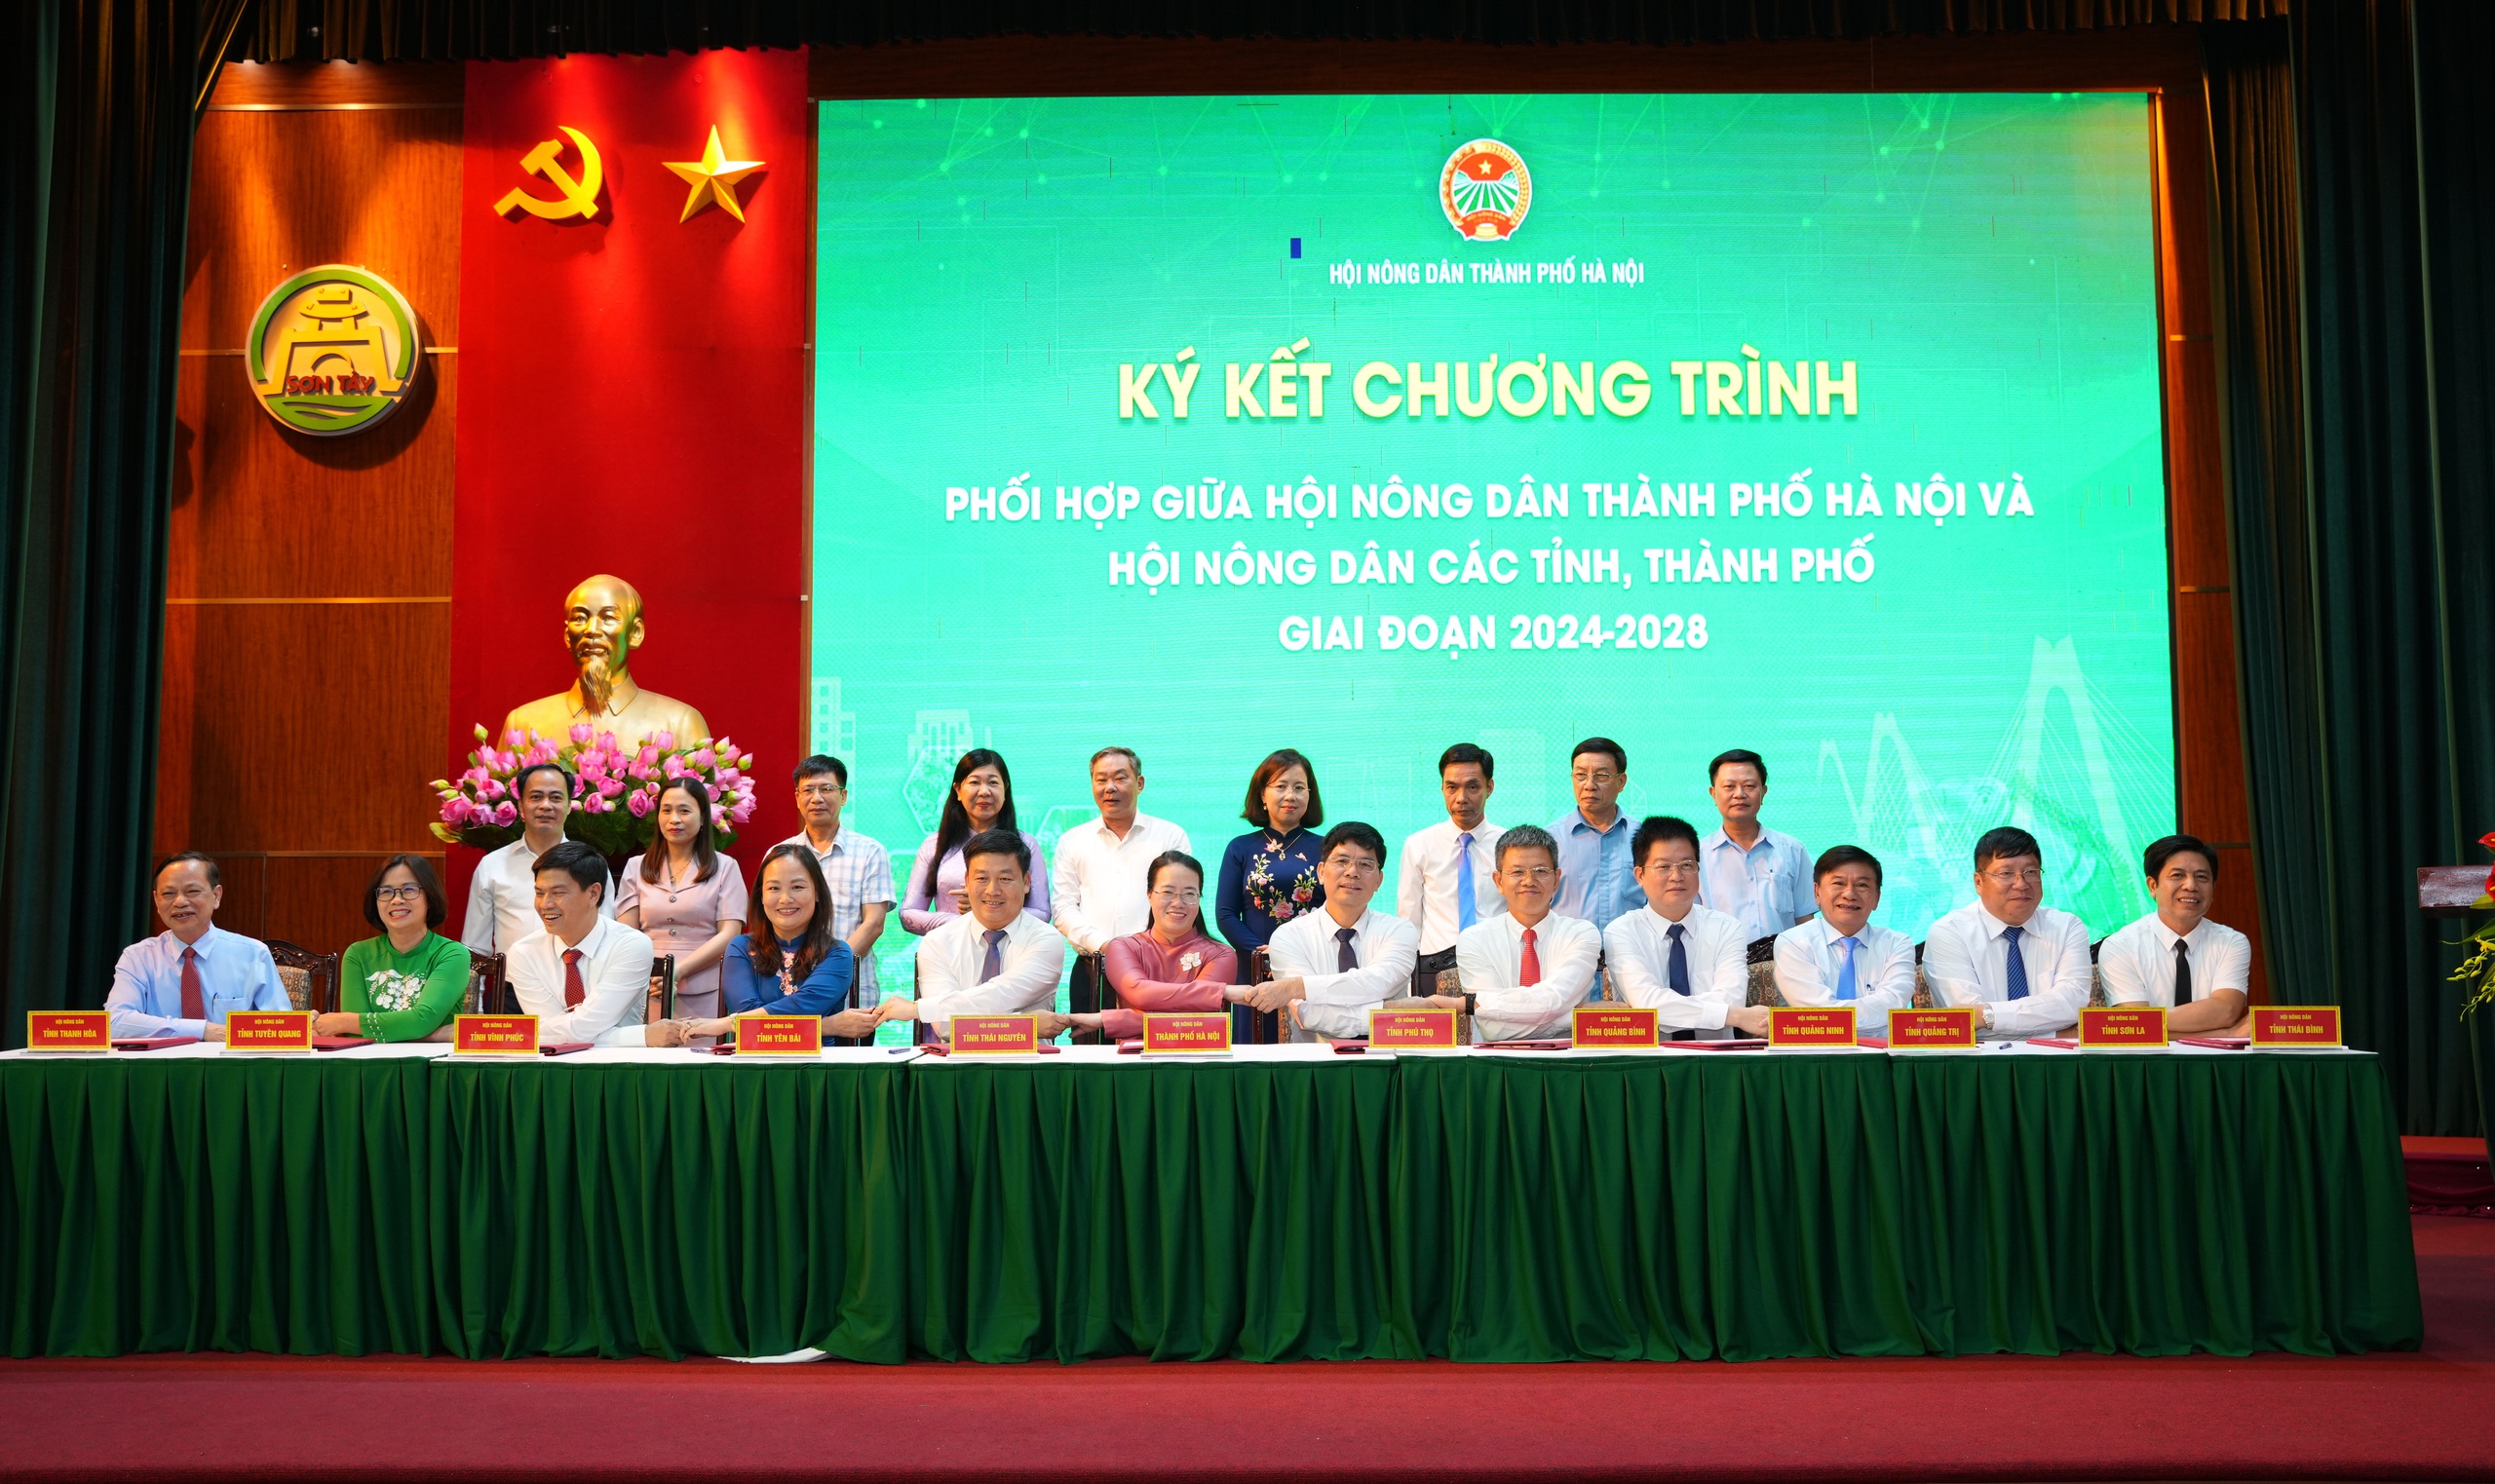 Hội Nông dân TP Hà Nội và Hội Nông dân 36 tỉnh, thành ký kết chương trình phối hợp giai đoạn 2024-2028- Ảnh 1.